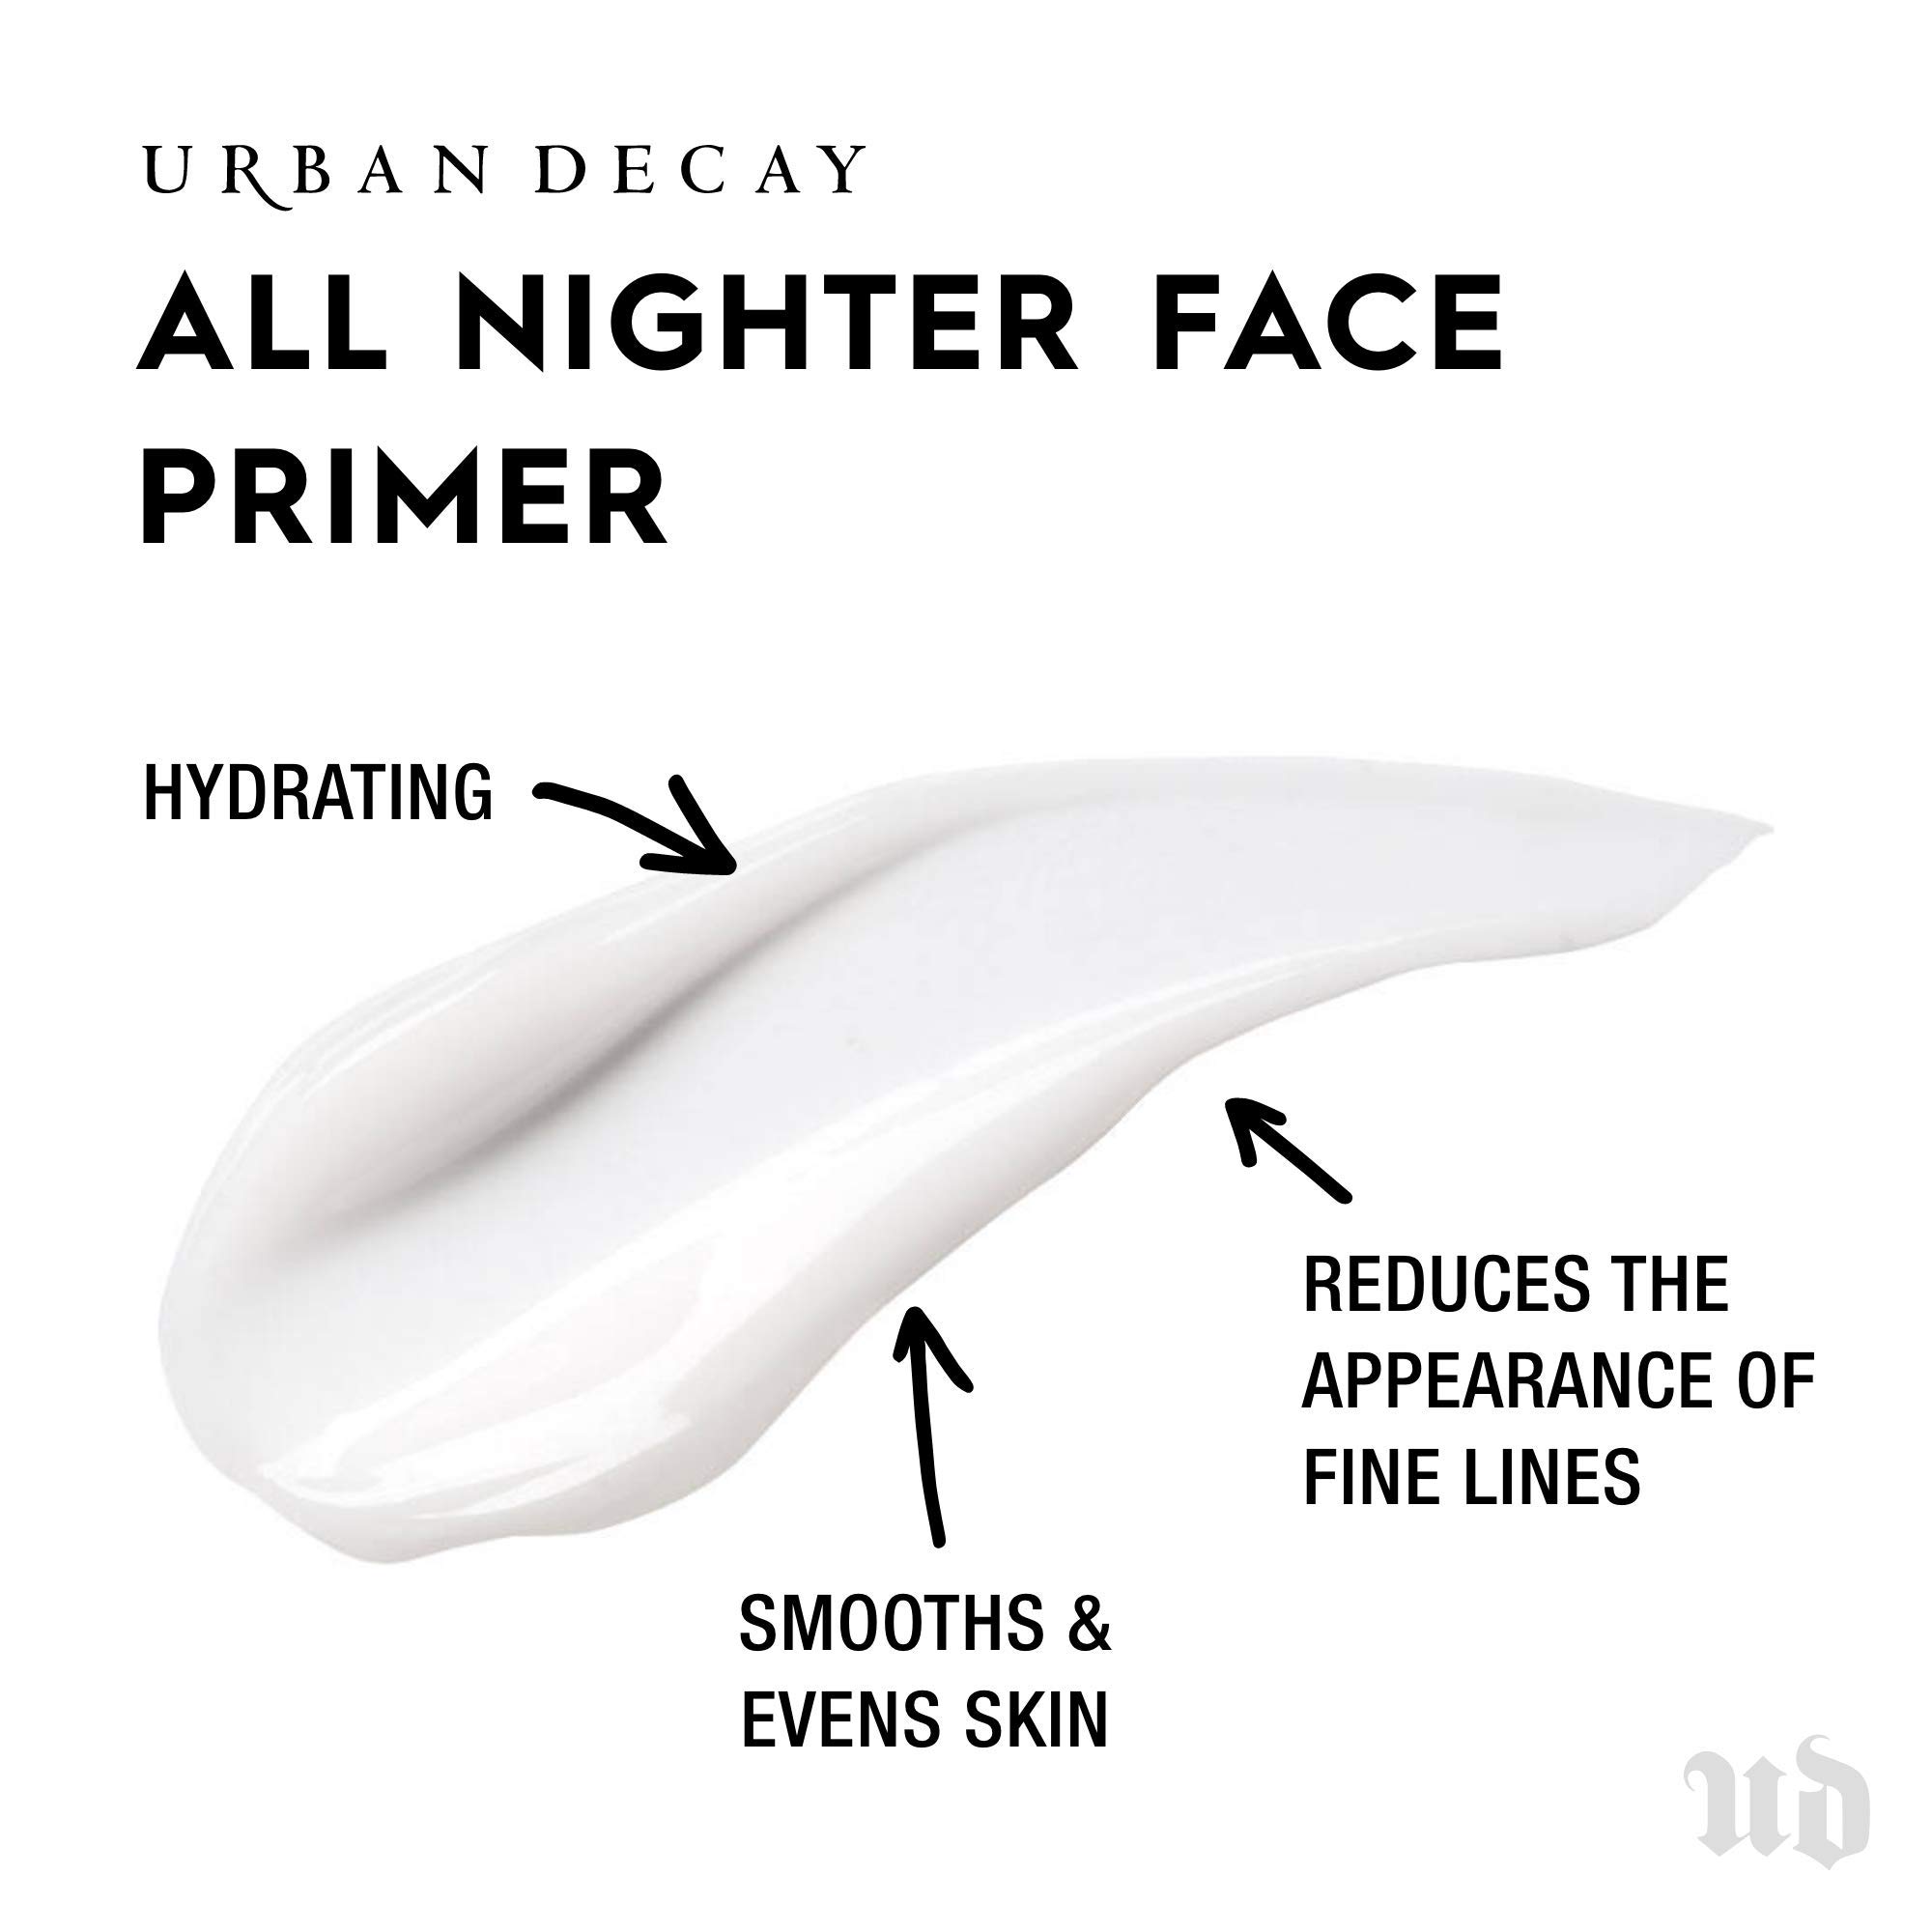 Urban Decay All Nighter Longwear Face Primer - Lightweight, Long-Lasting Formula - Locks Foundation in Place, Smooths & Hydrates Skin - 1.0 fl. oz